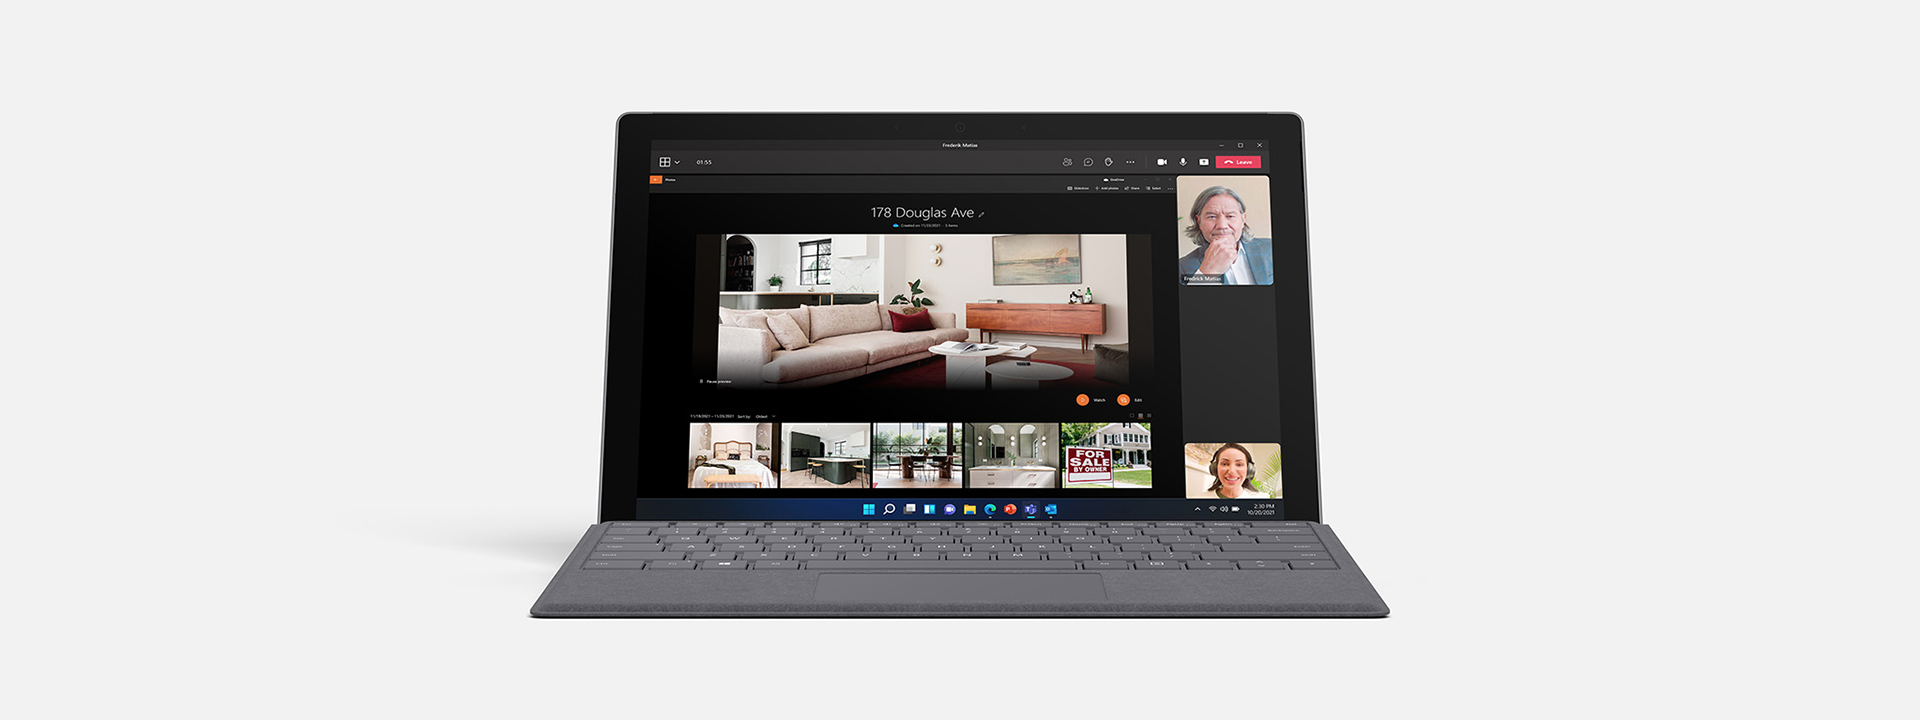 Surface Pro 7+: 法人向けのポータブルな 2 in 1 ノート PC - 法人向け Microsoft Surface